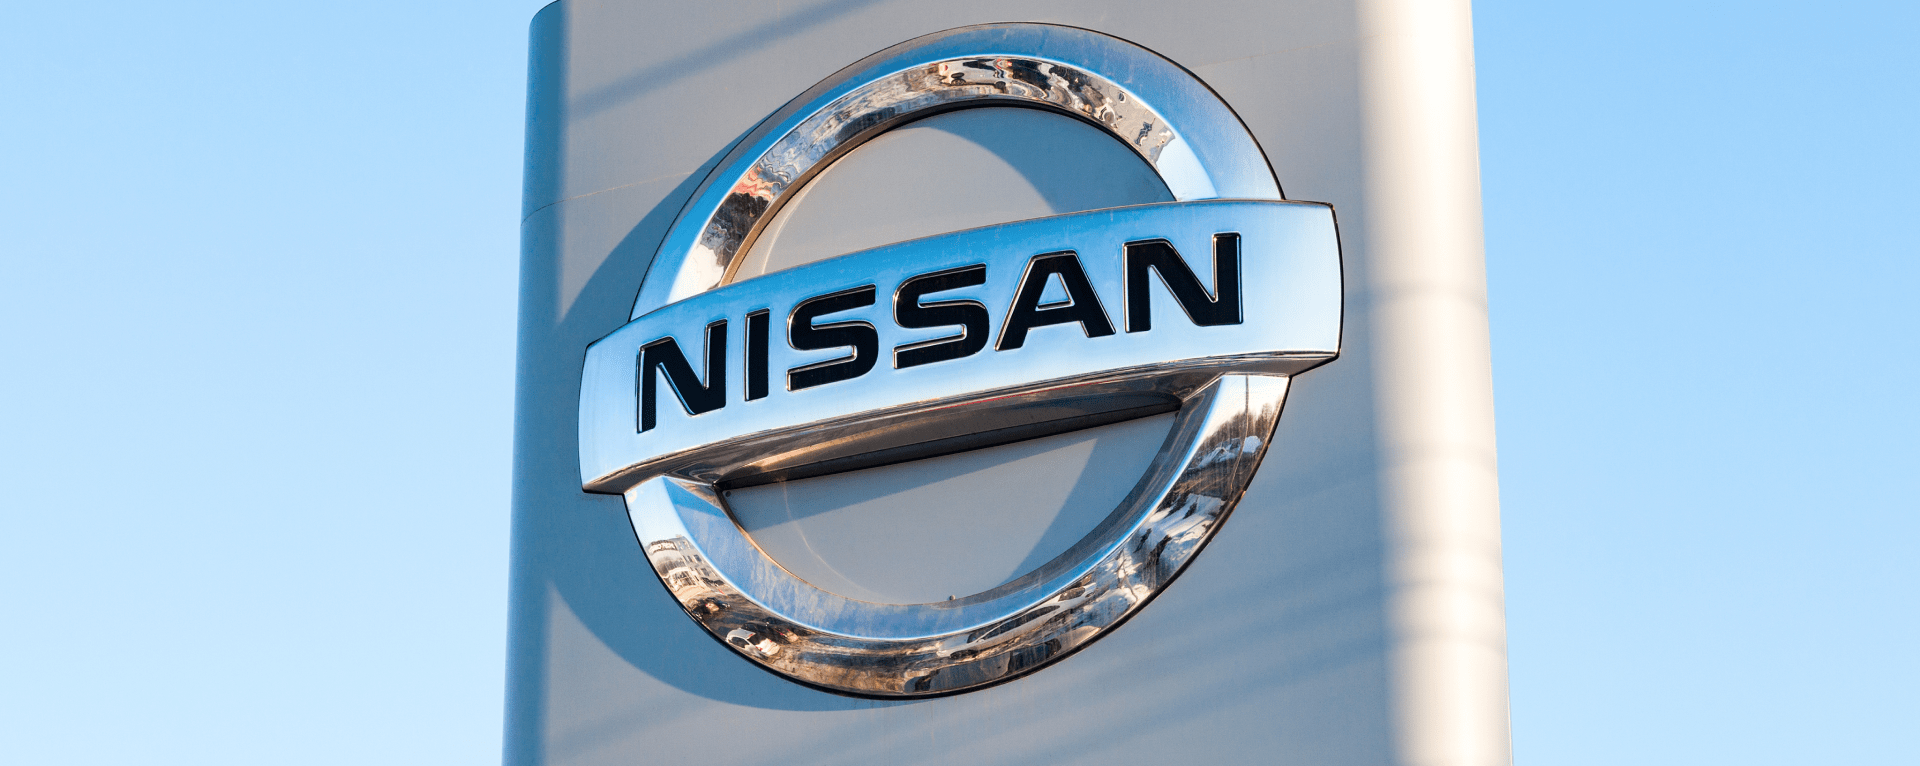 Nissan Dealership sign